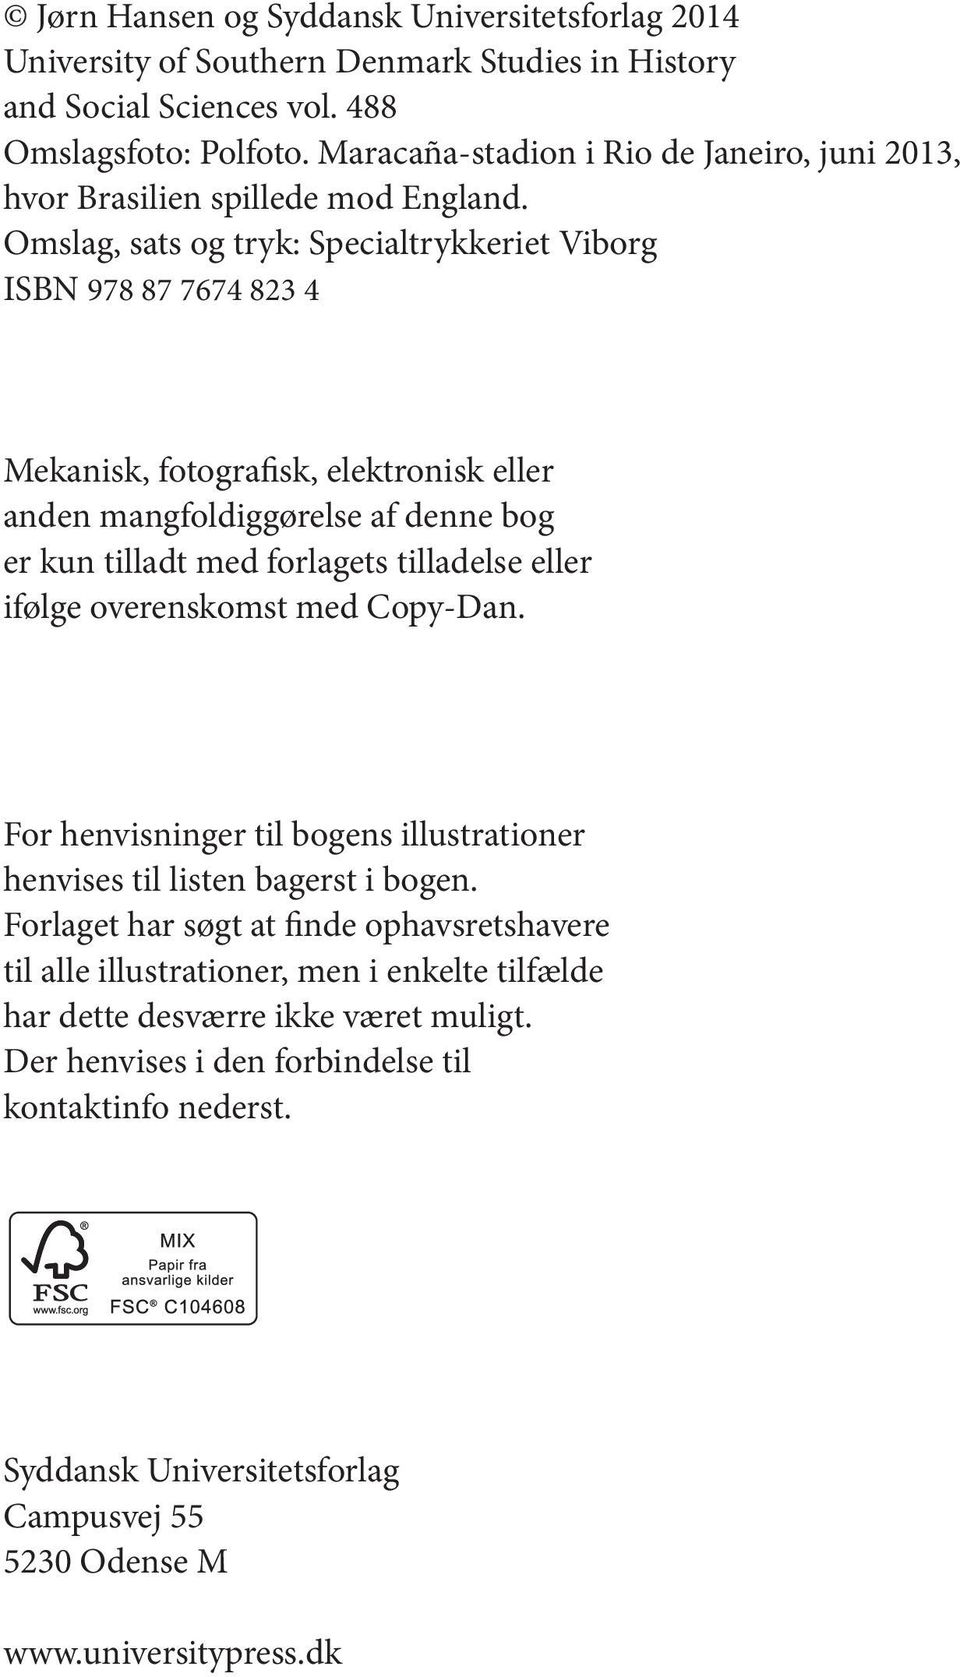 Omslag, sats og tryk: Specialtrykkeriet Viborg ISBN 978 87 7674 823 4 Mekanisk, fotografisk, elektronisk eller anden mangfoldiggørelse af denne bog er kun tilladt med forlagets tilladelse eller